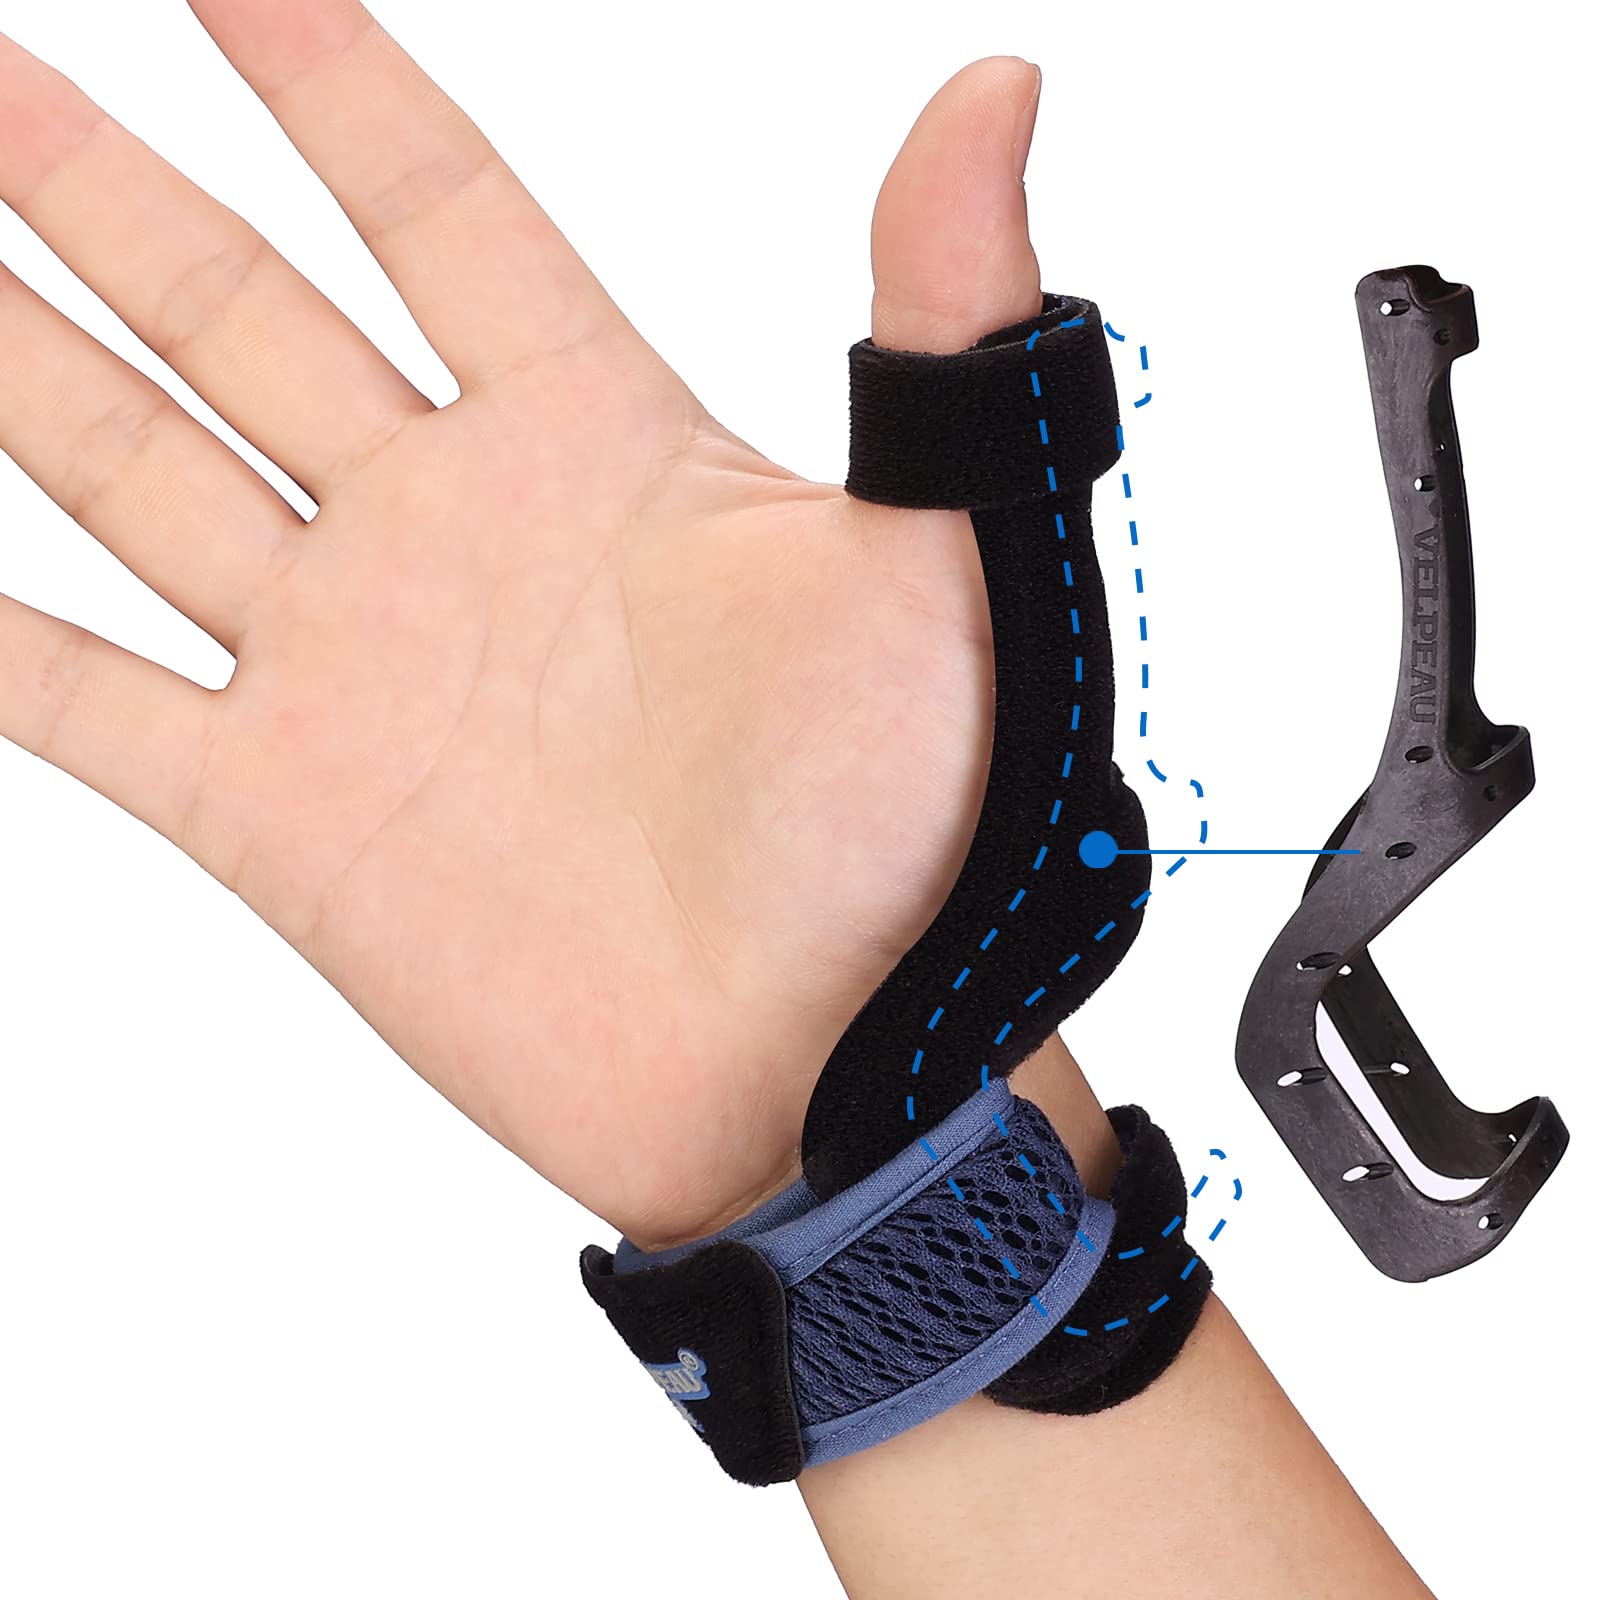 VELPEAU Wrist Brace Thumb Spica Splint Support for De Quervain's